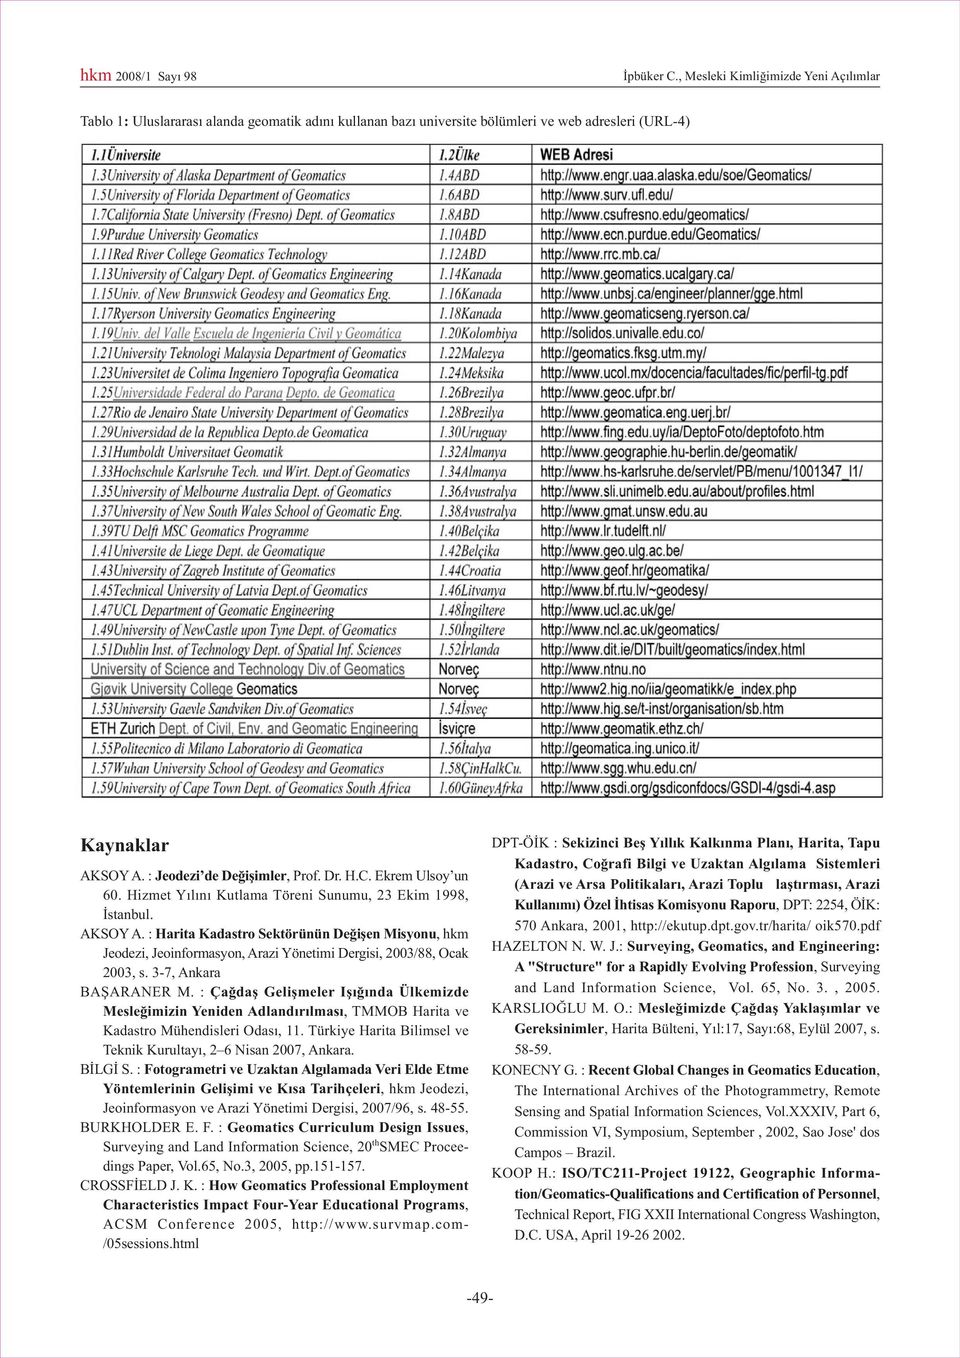 : Harita Kadastro Sektörünün Deðiþen Misyonu, hkm Jeodezi, Jeoinformasyon, Arazi Yönetimi Dergisi, 2003/88, Ocak 2003, s. 3-7, Ankara BAÞARANER M.